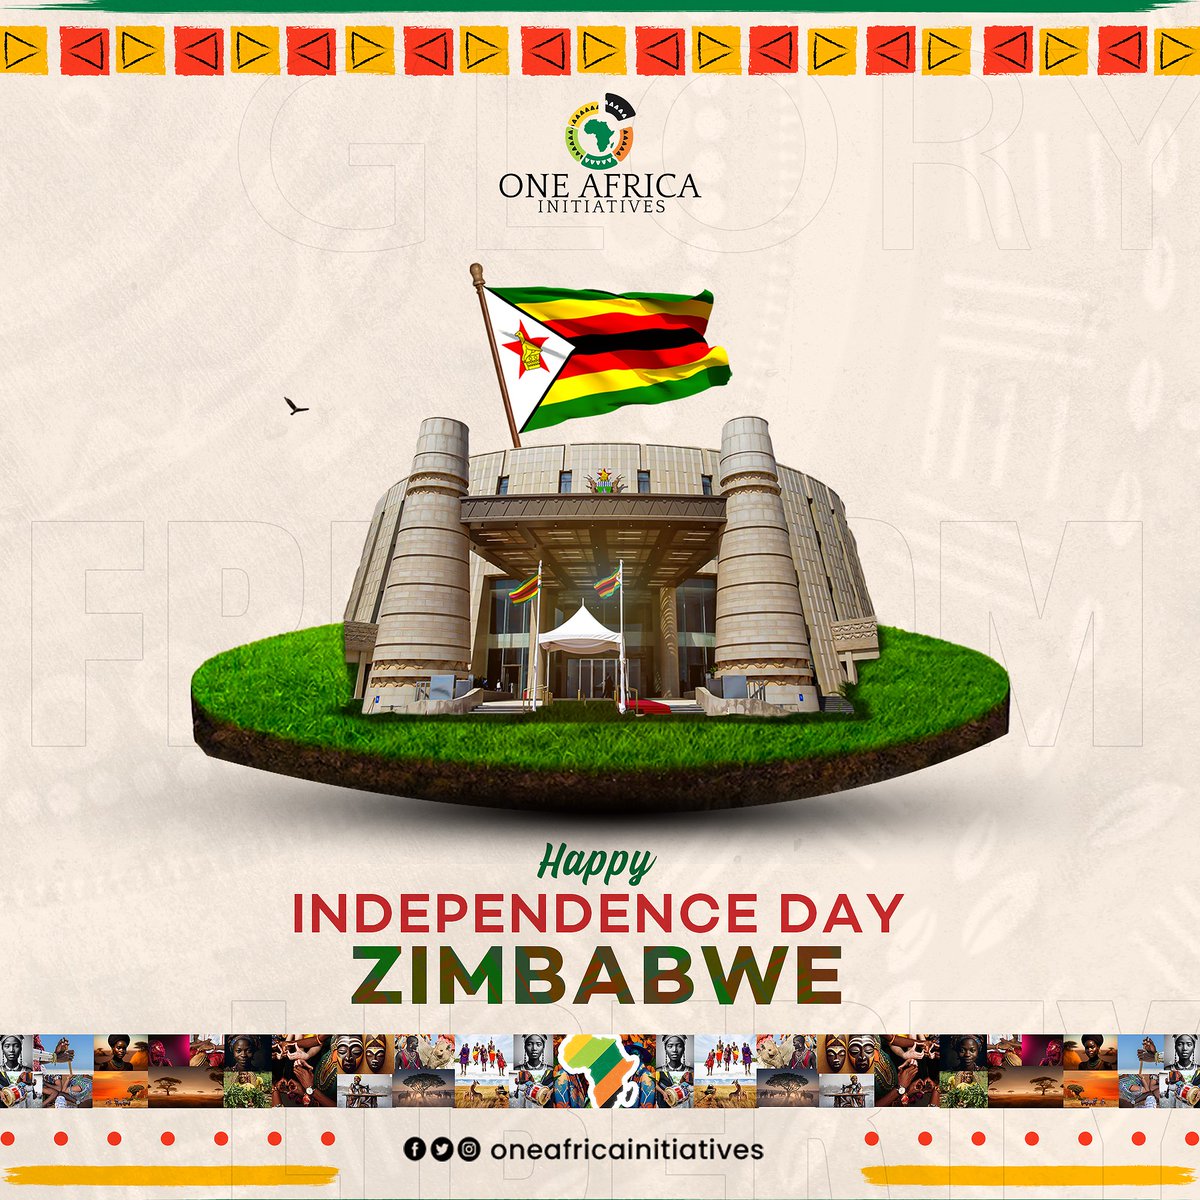 Celebrating Zimbabwe's journey of freedom and unity. Happy Independence Day, Zimbabwe! 🇿🇼

#IndependenceDay #Zimbabwe #FreedomDay #ZimIndependence #ProudlyZimbabwean #UnityInDiversity #Zim44 #LegacyOfFreedom #ZimbabweanPride #CelebrateFreedom #AfricanIndependence #ZimUnity